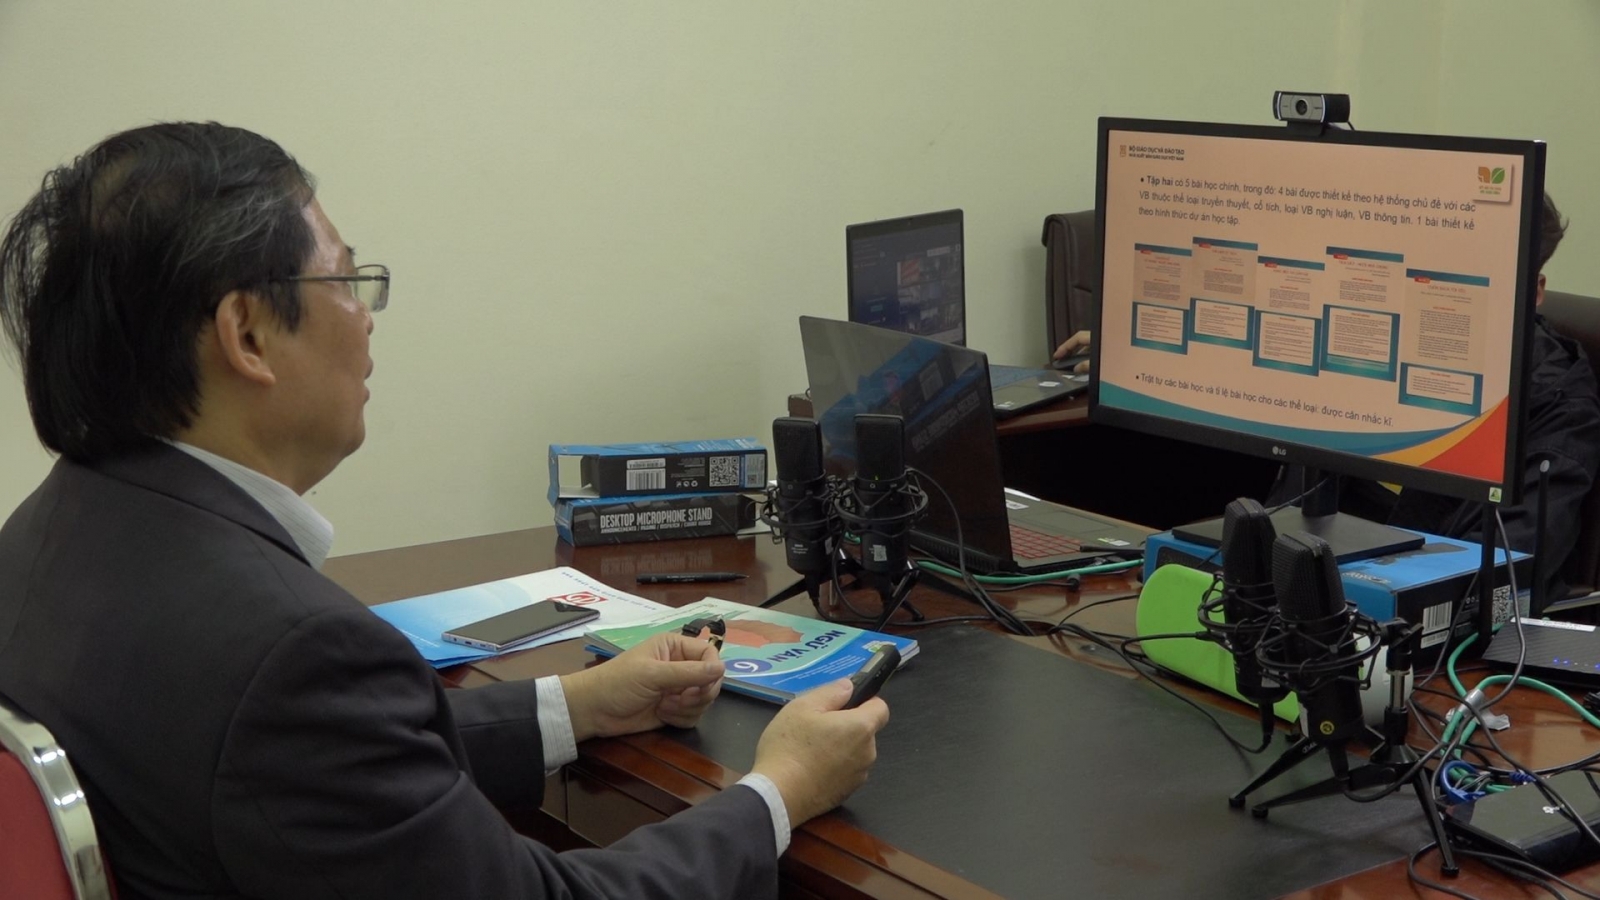 Tây Ninh: 100% giáo viên, cán bộ quản lý được tập huấn và bồi dưỡng về SGK mới - Ảnh minh hoạ 2